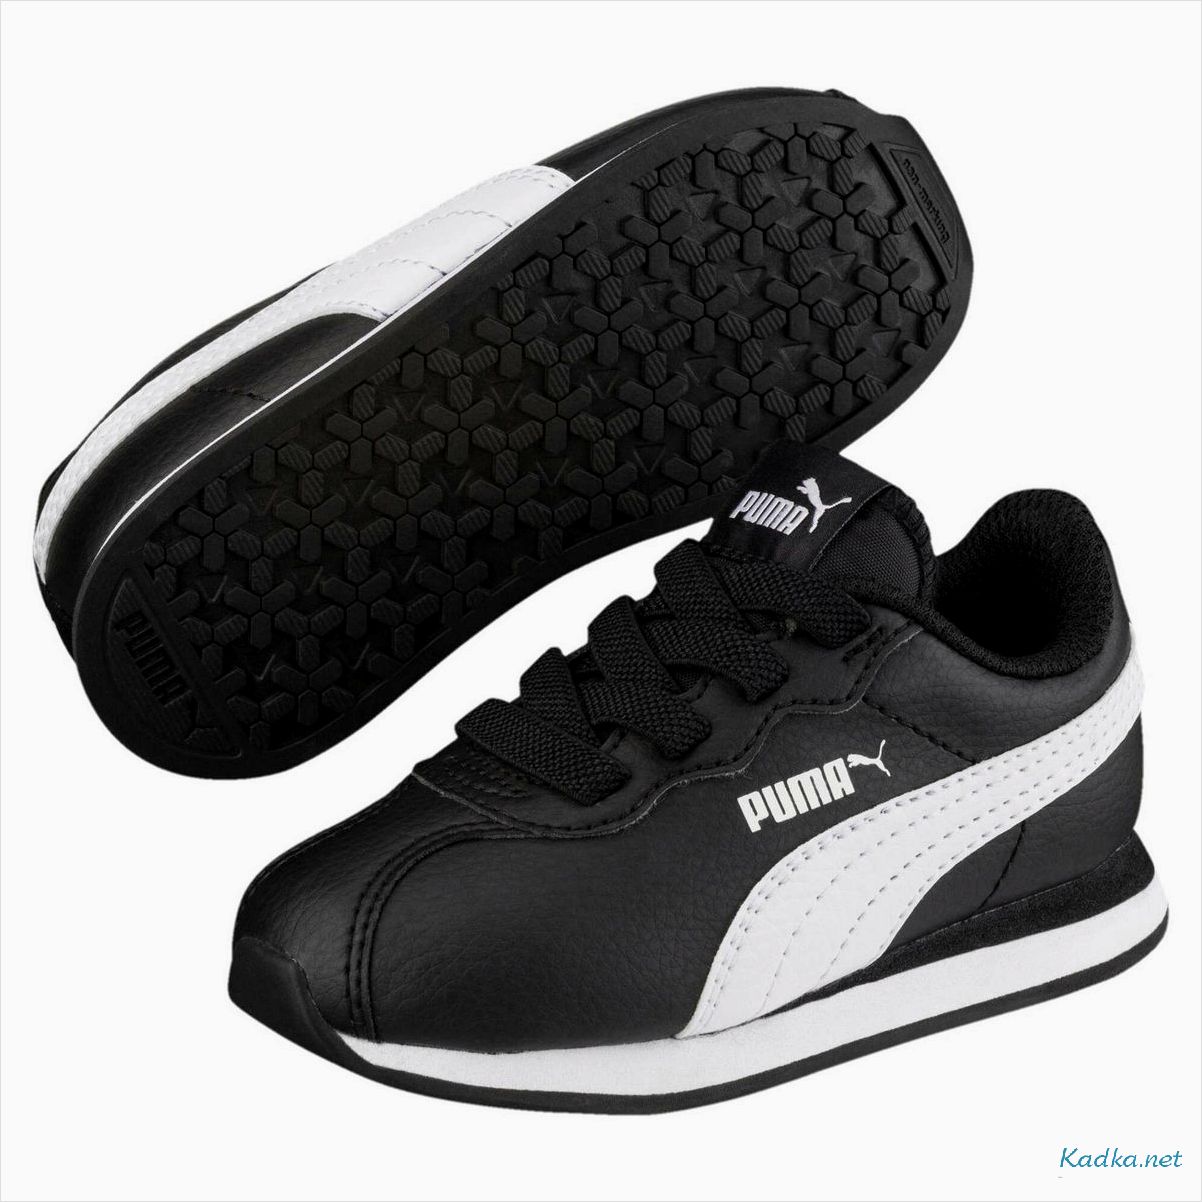 Кроссовки Puma: стильная и комфортная обувь для активного образа жизни